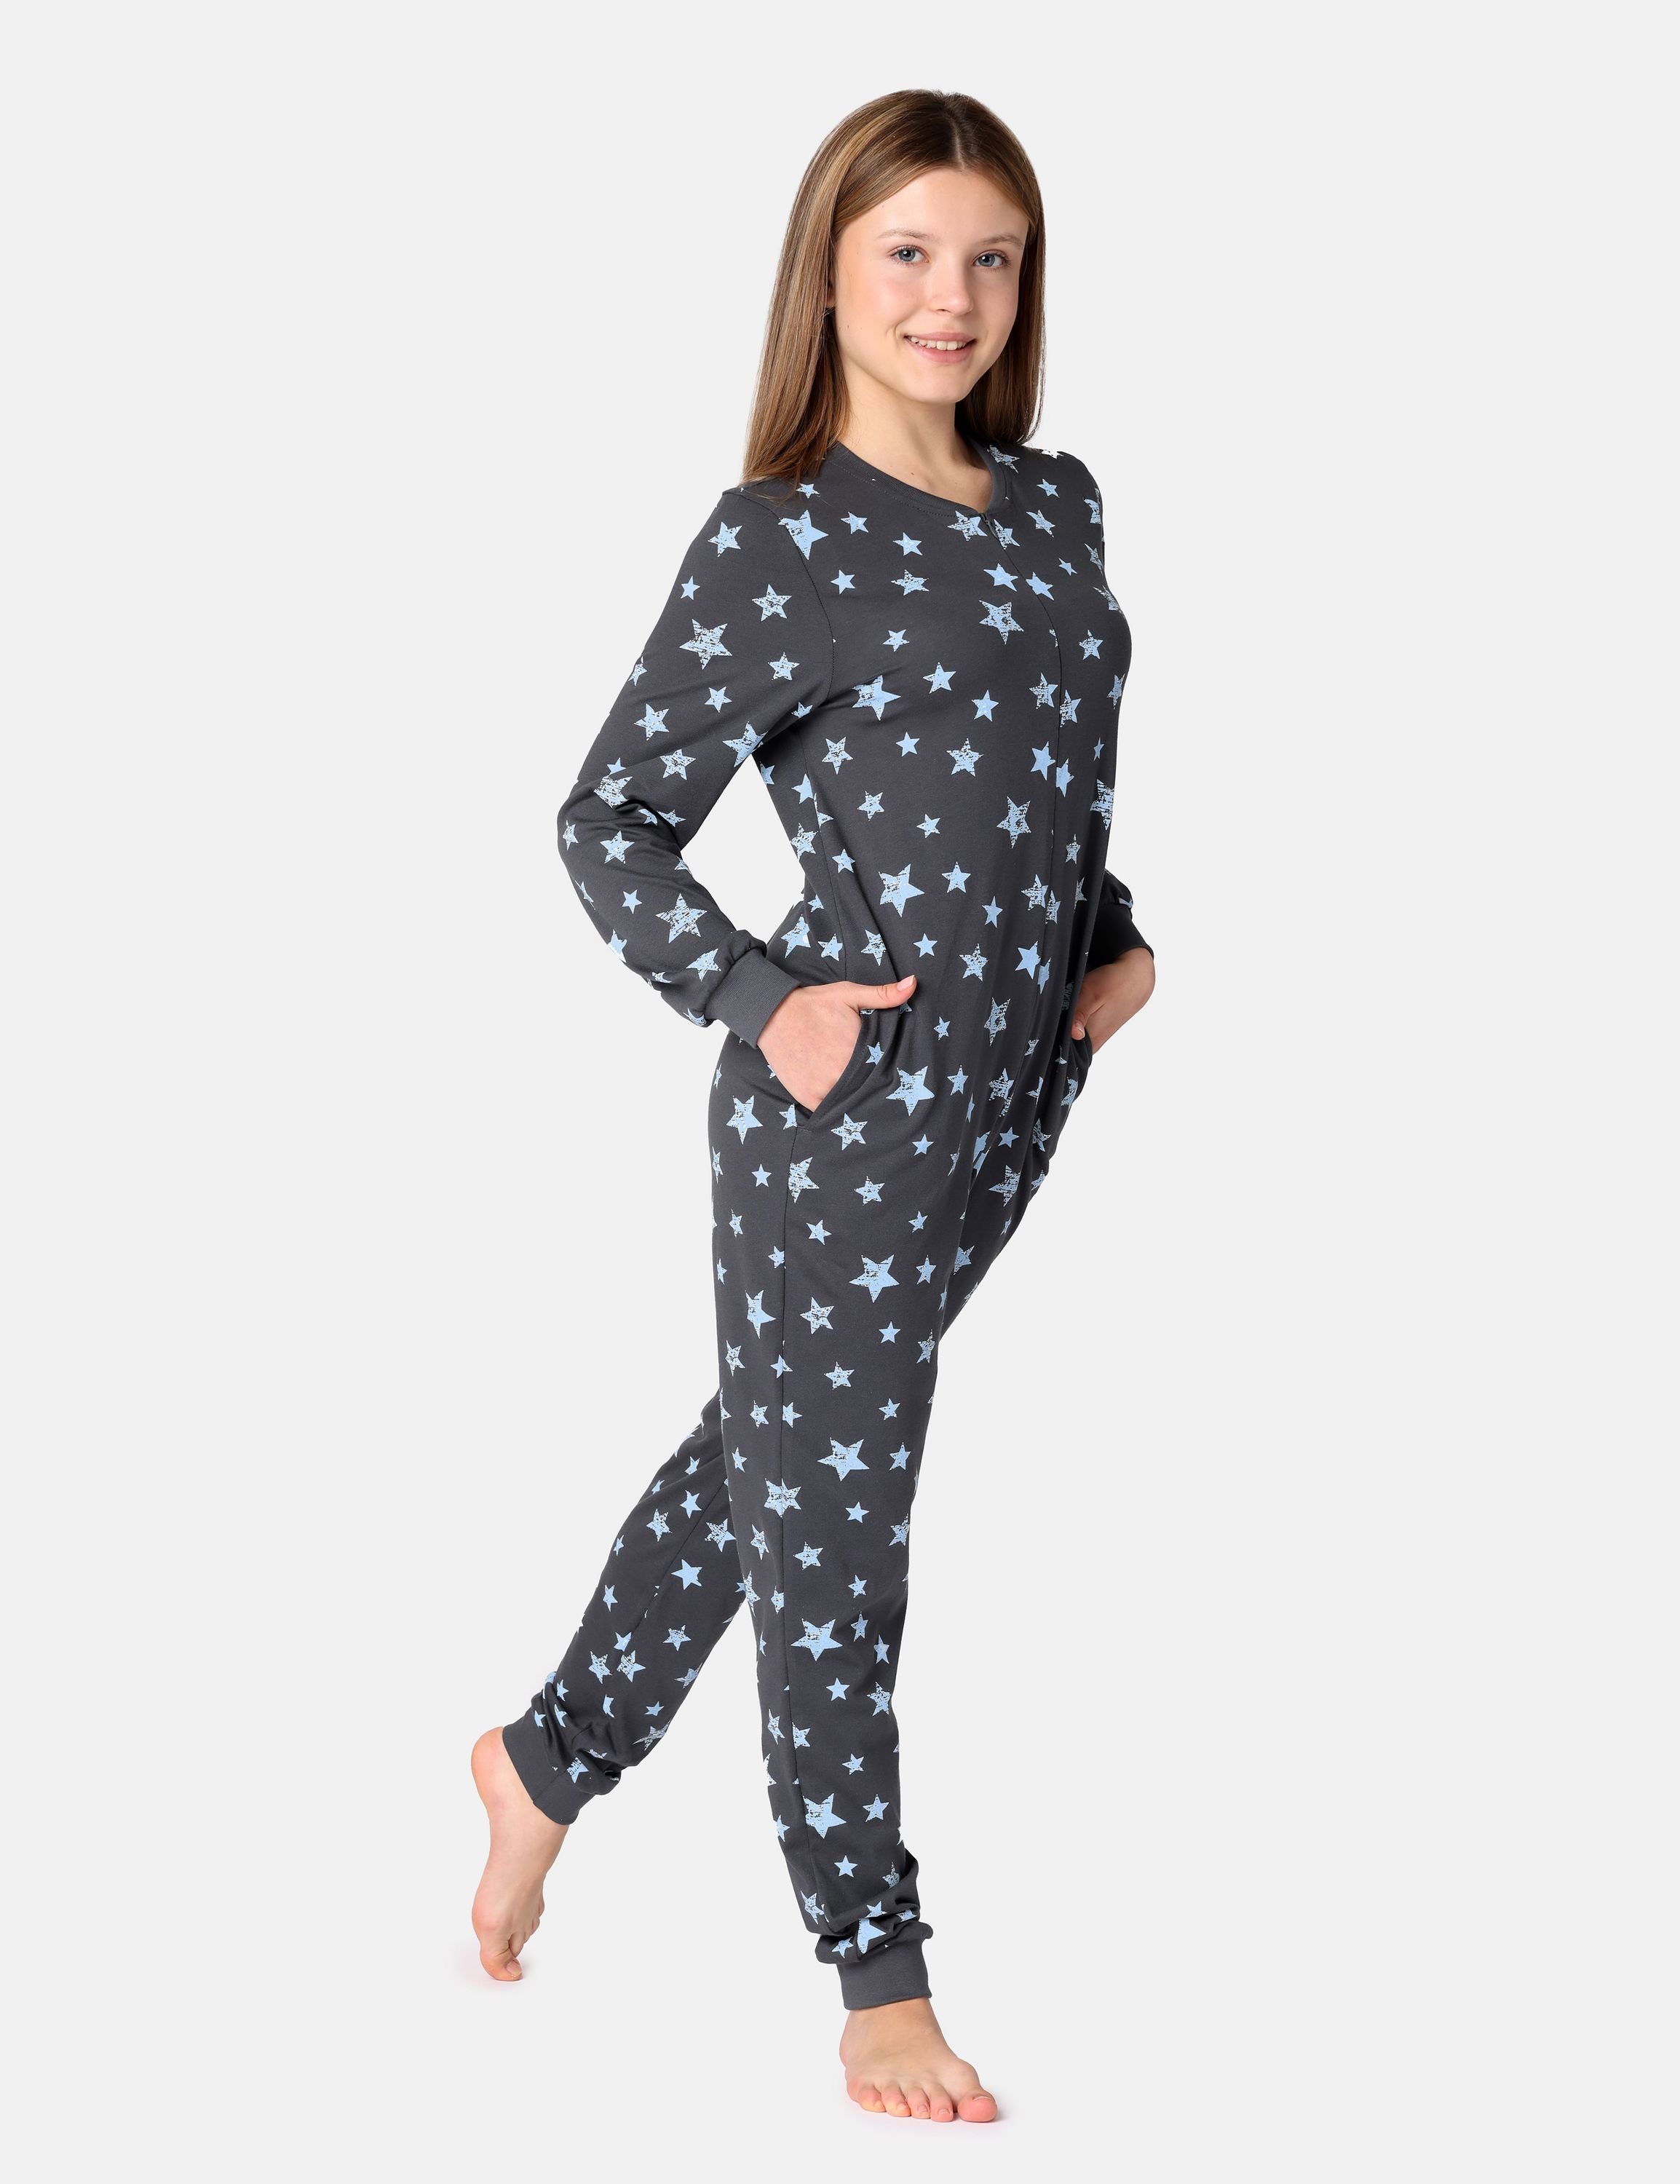 Schlafoverall Merry Sterne Schlafanzug Schlafanzug Style Grafit/Blau MS10-235 Jugend Mädchen